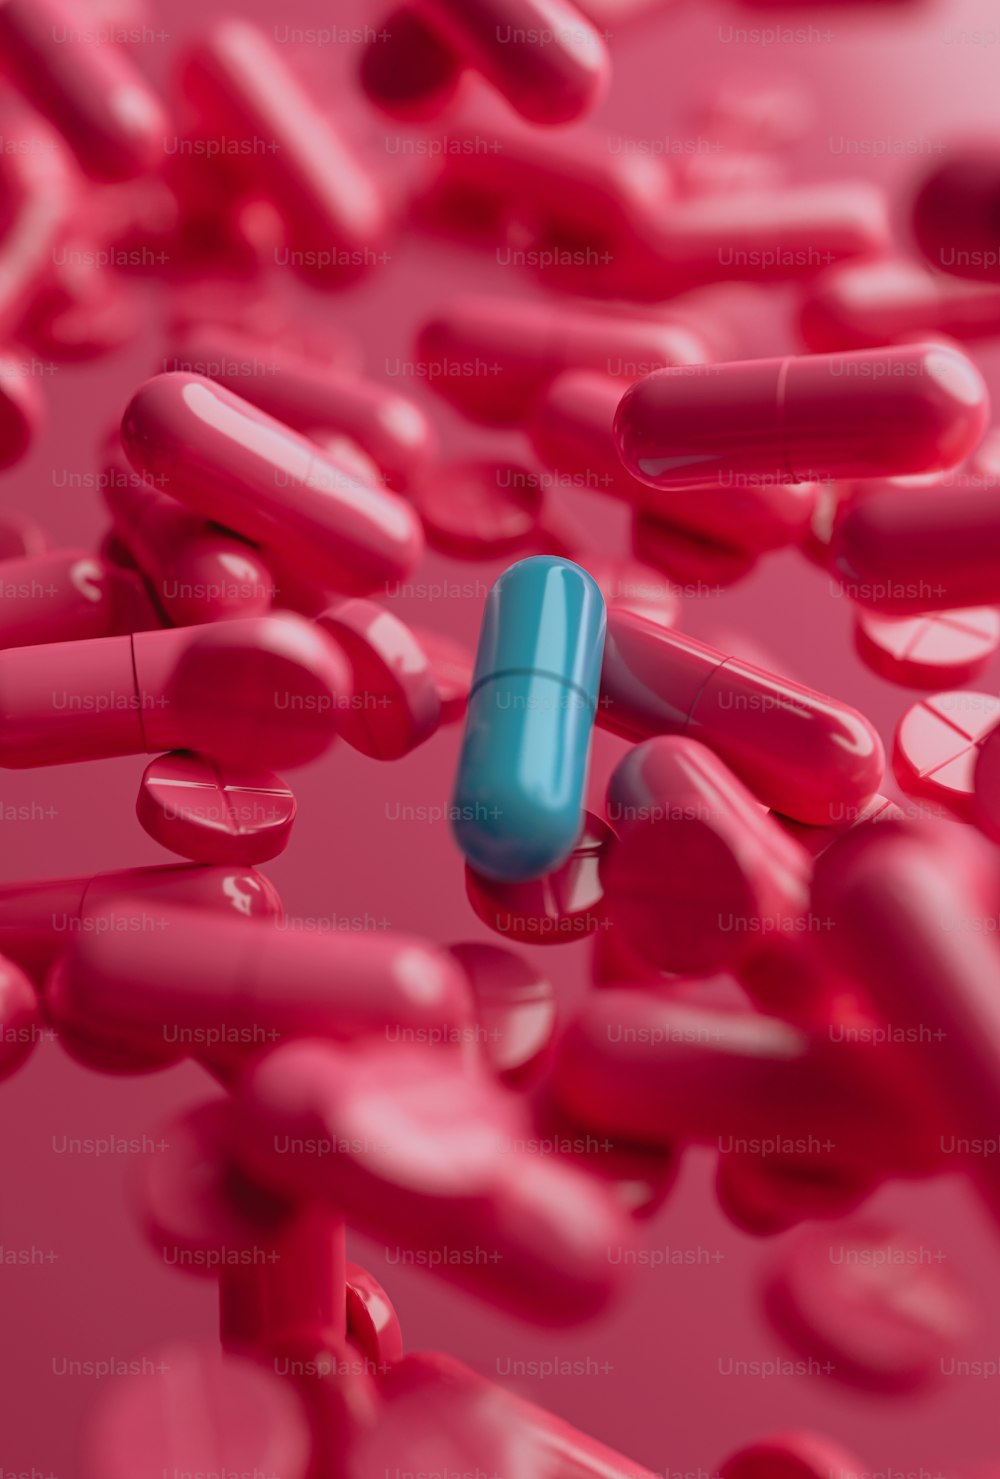 une pilule bleue entourée de pilules roses